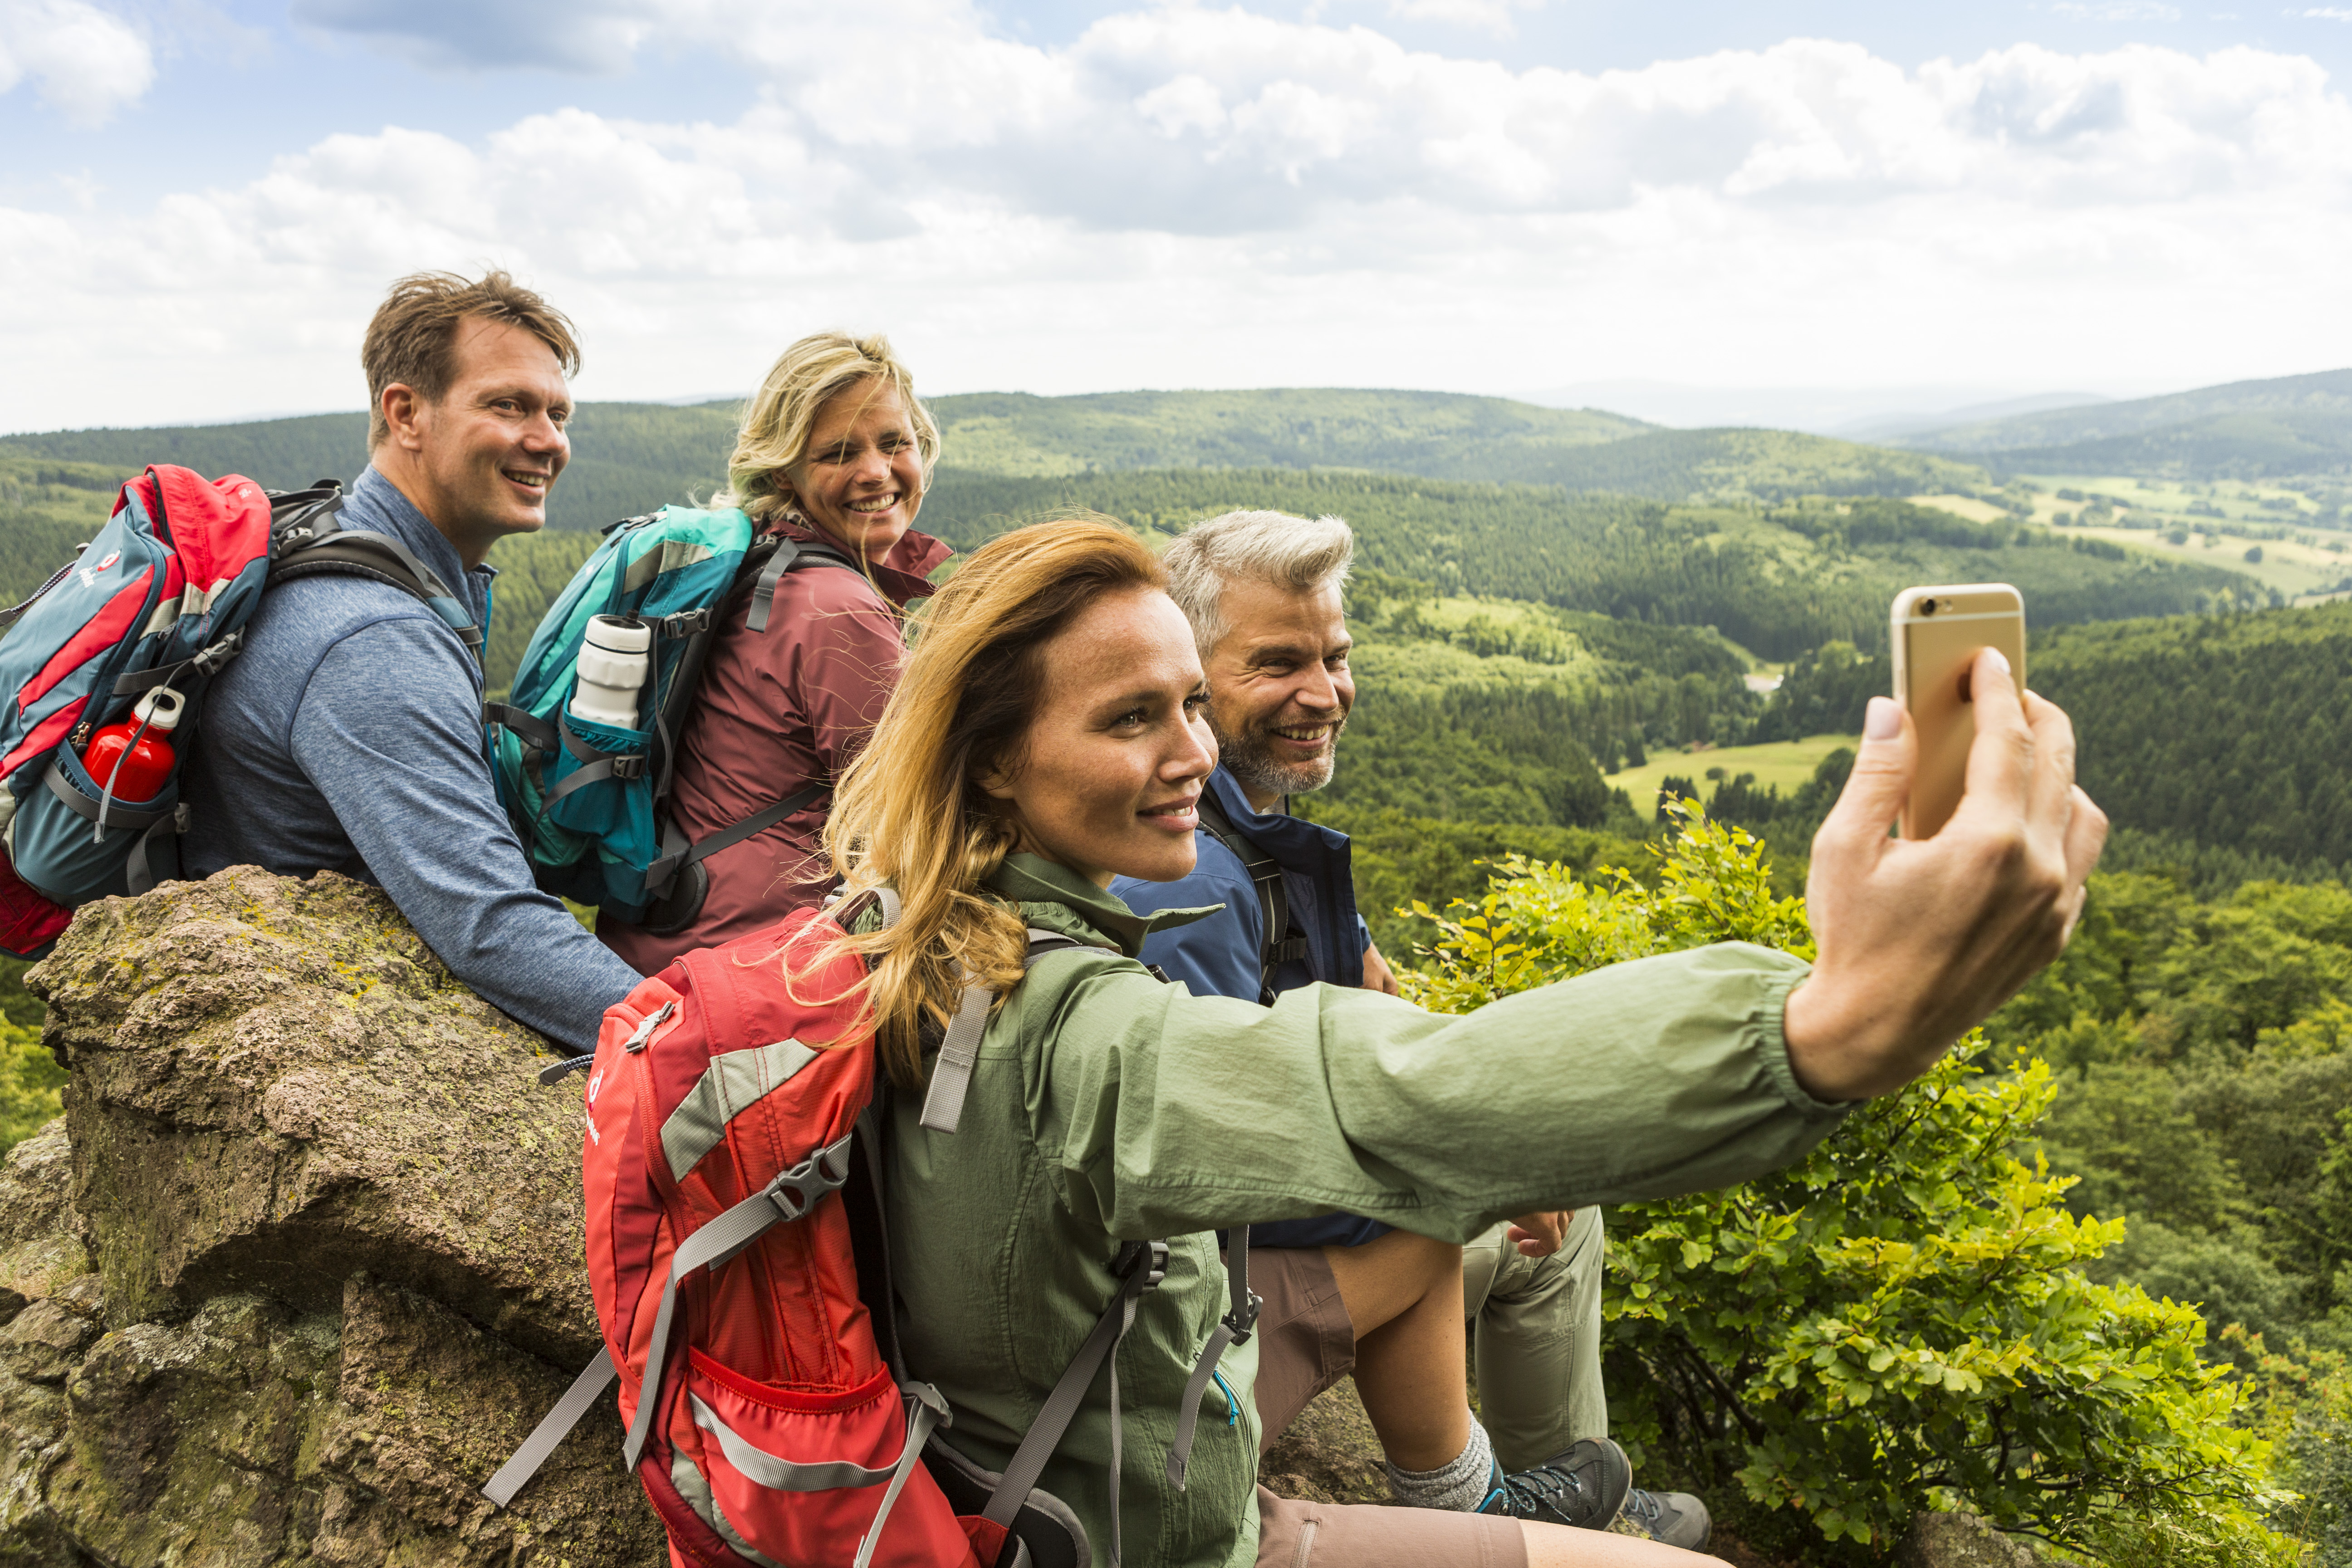 Menschengruppe auf Berg vor Thüringer Wald beim Aufnehmen eines Selfies